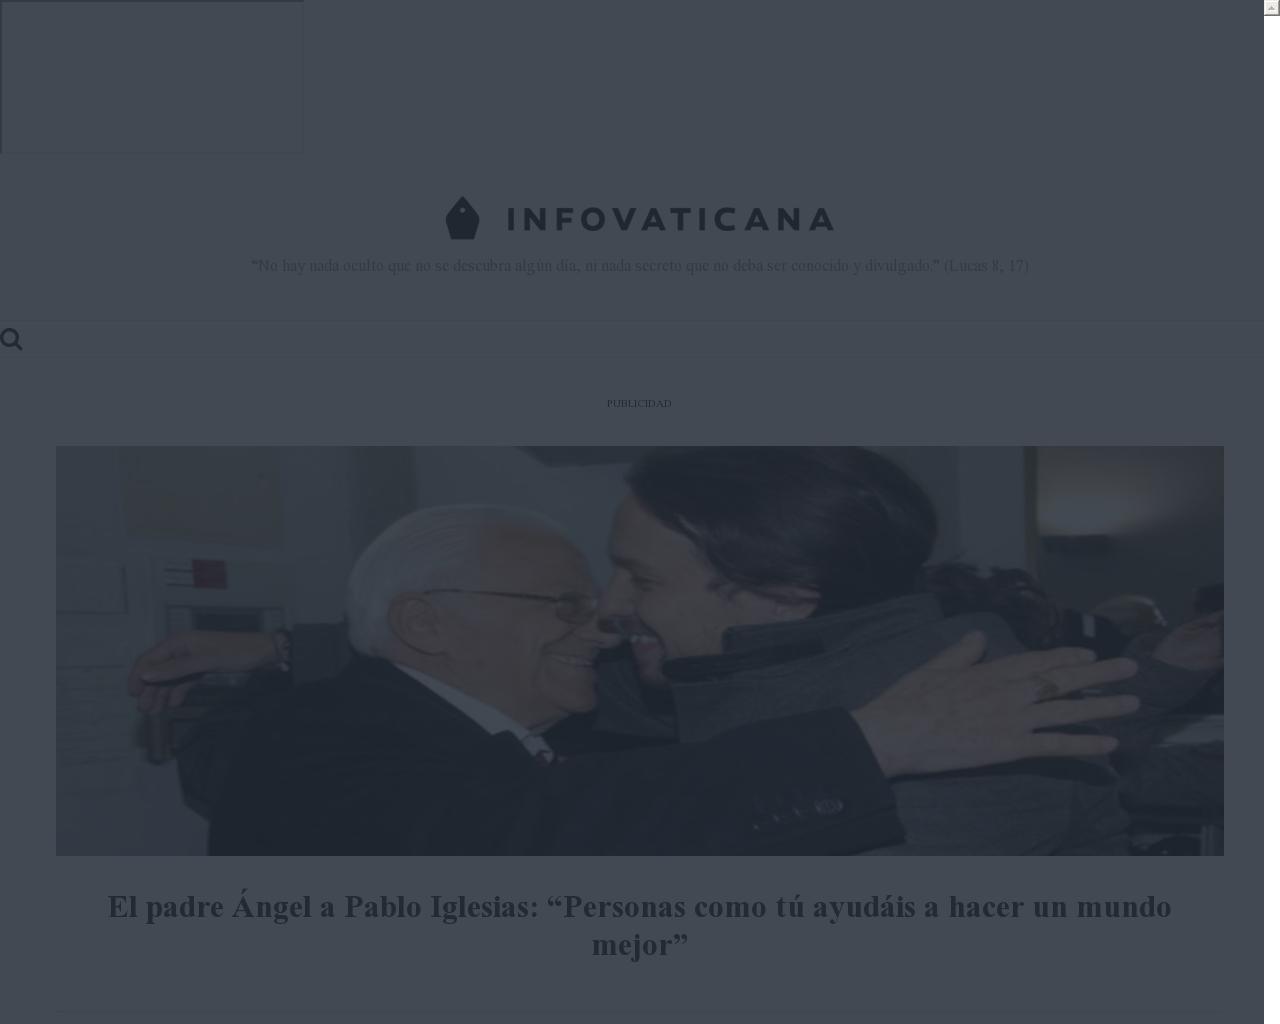 infovaticana.com